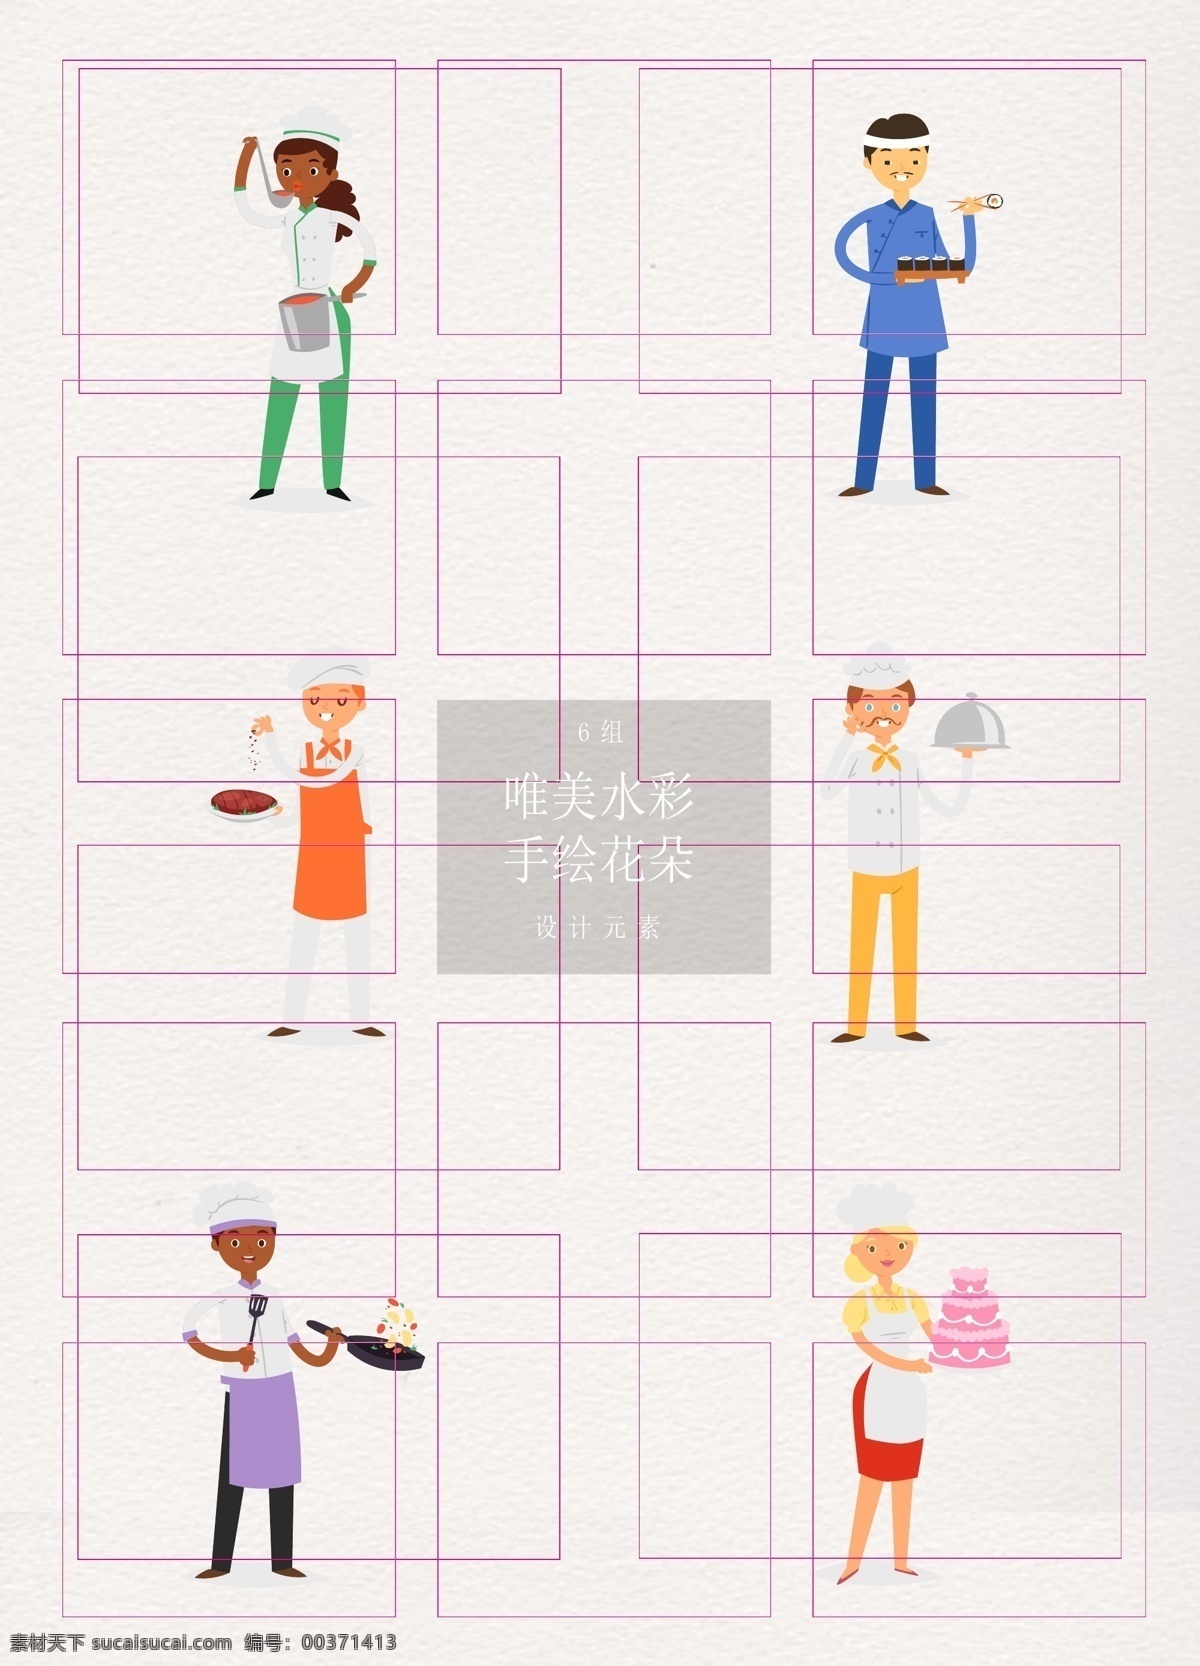 扁平化 组 不同 国家 年龄 厨师 人物 卡通 矢量图 女孩 人物设计 男孩 中国人 日本人